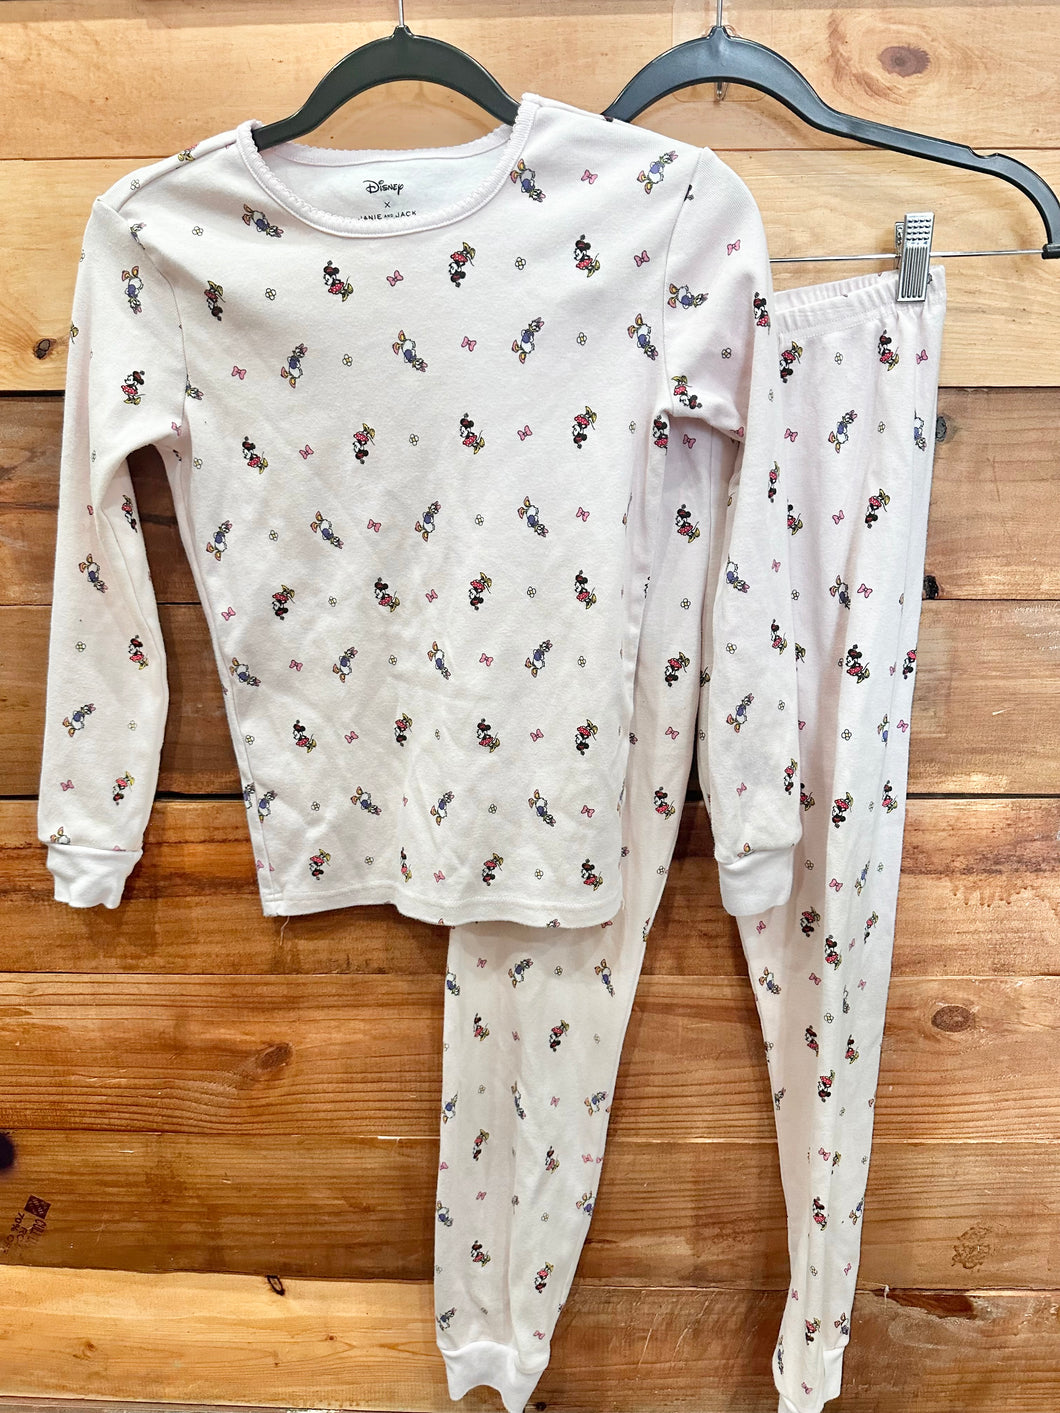 Janie & x Disney Minnie Pajamas Size 12